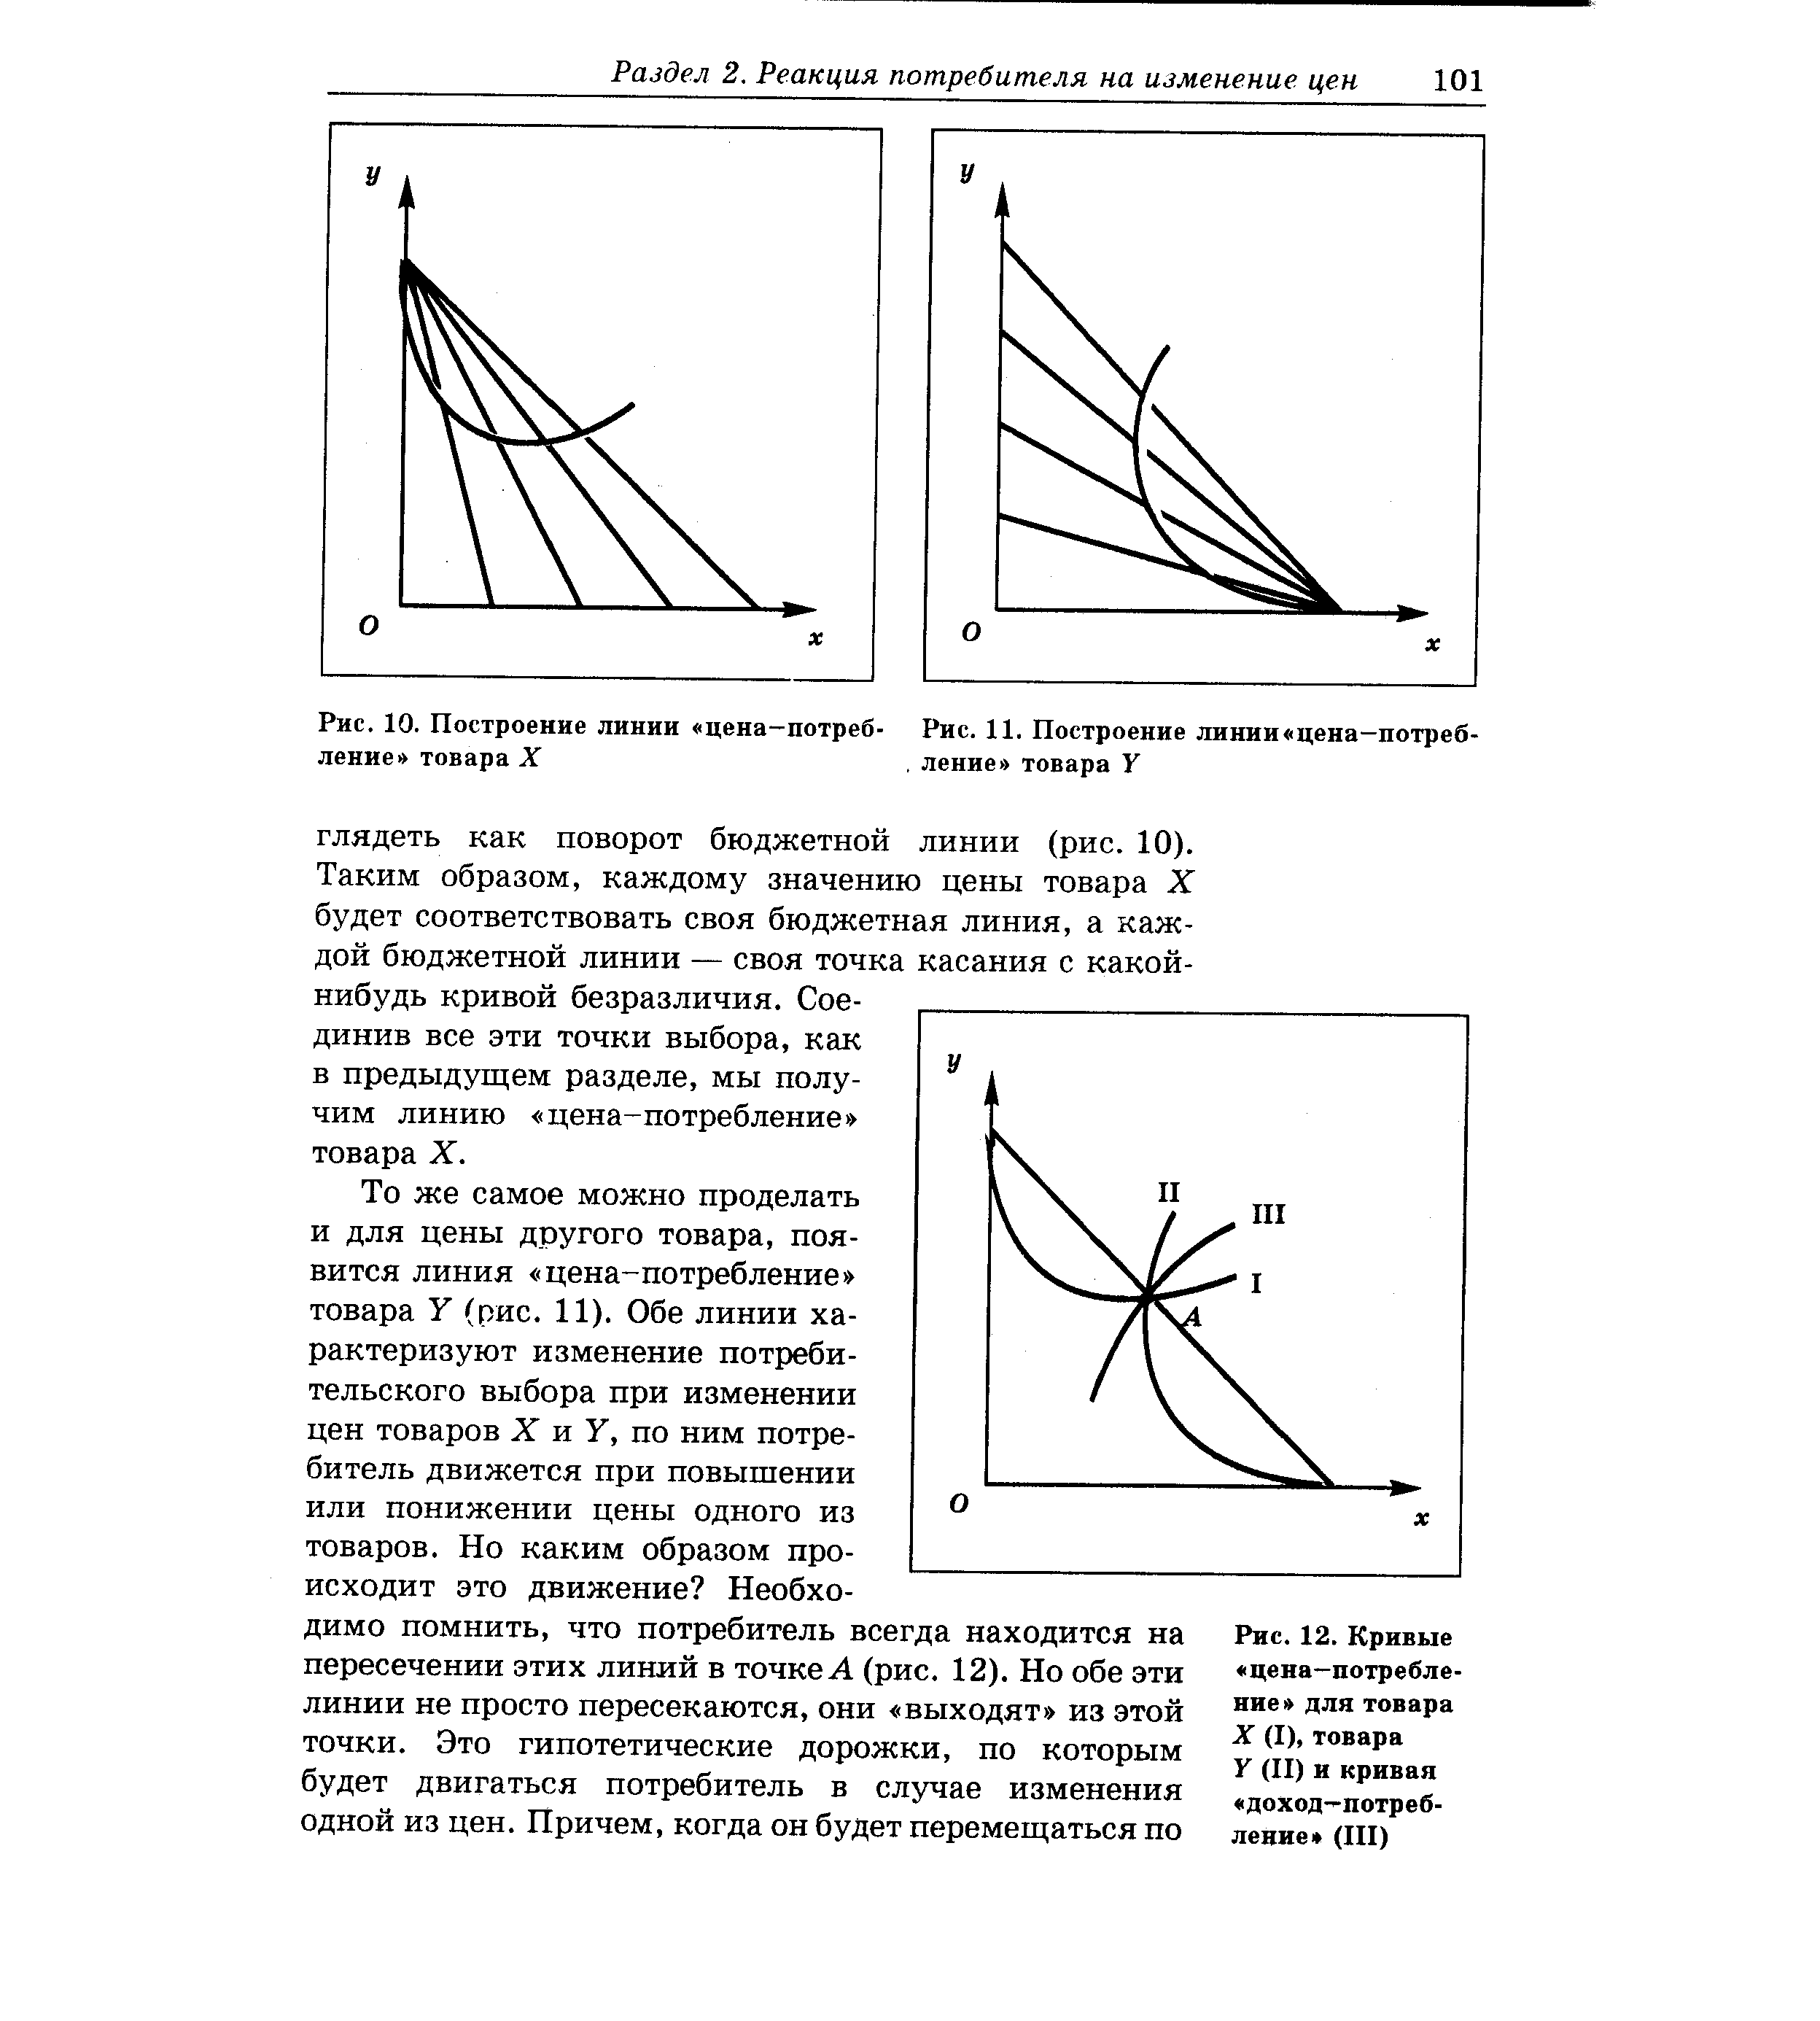 Рис. 12. Кривые цена—потребление для товара X (I), товара У (II) и кривая доход—потребление (III) 